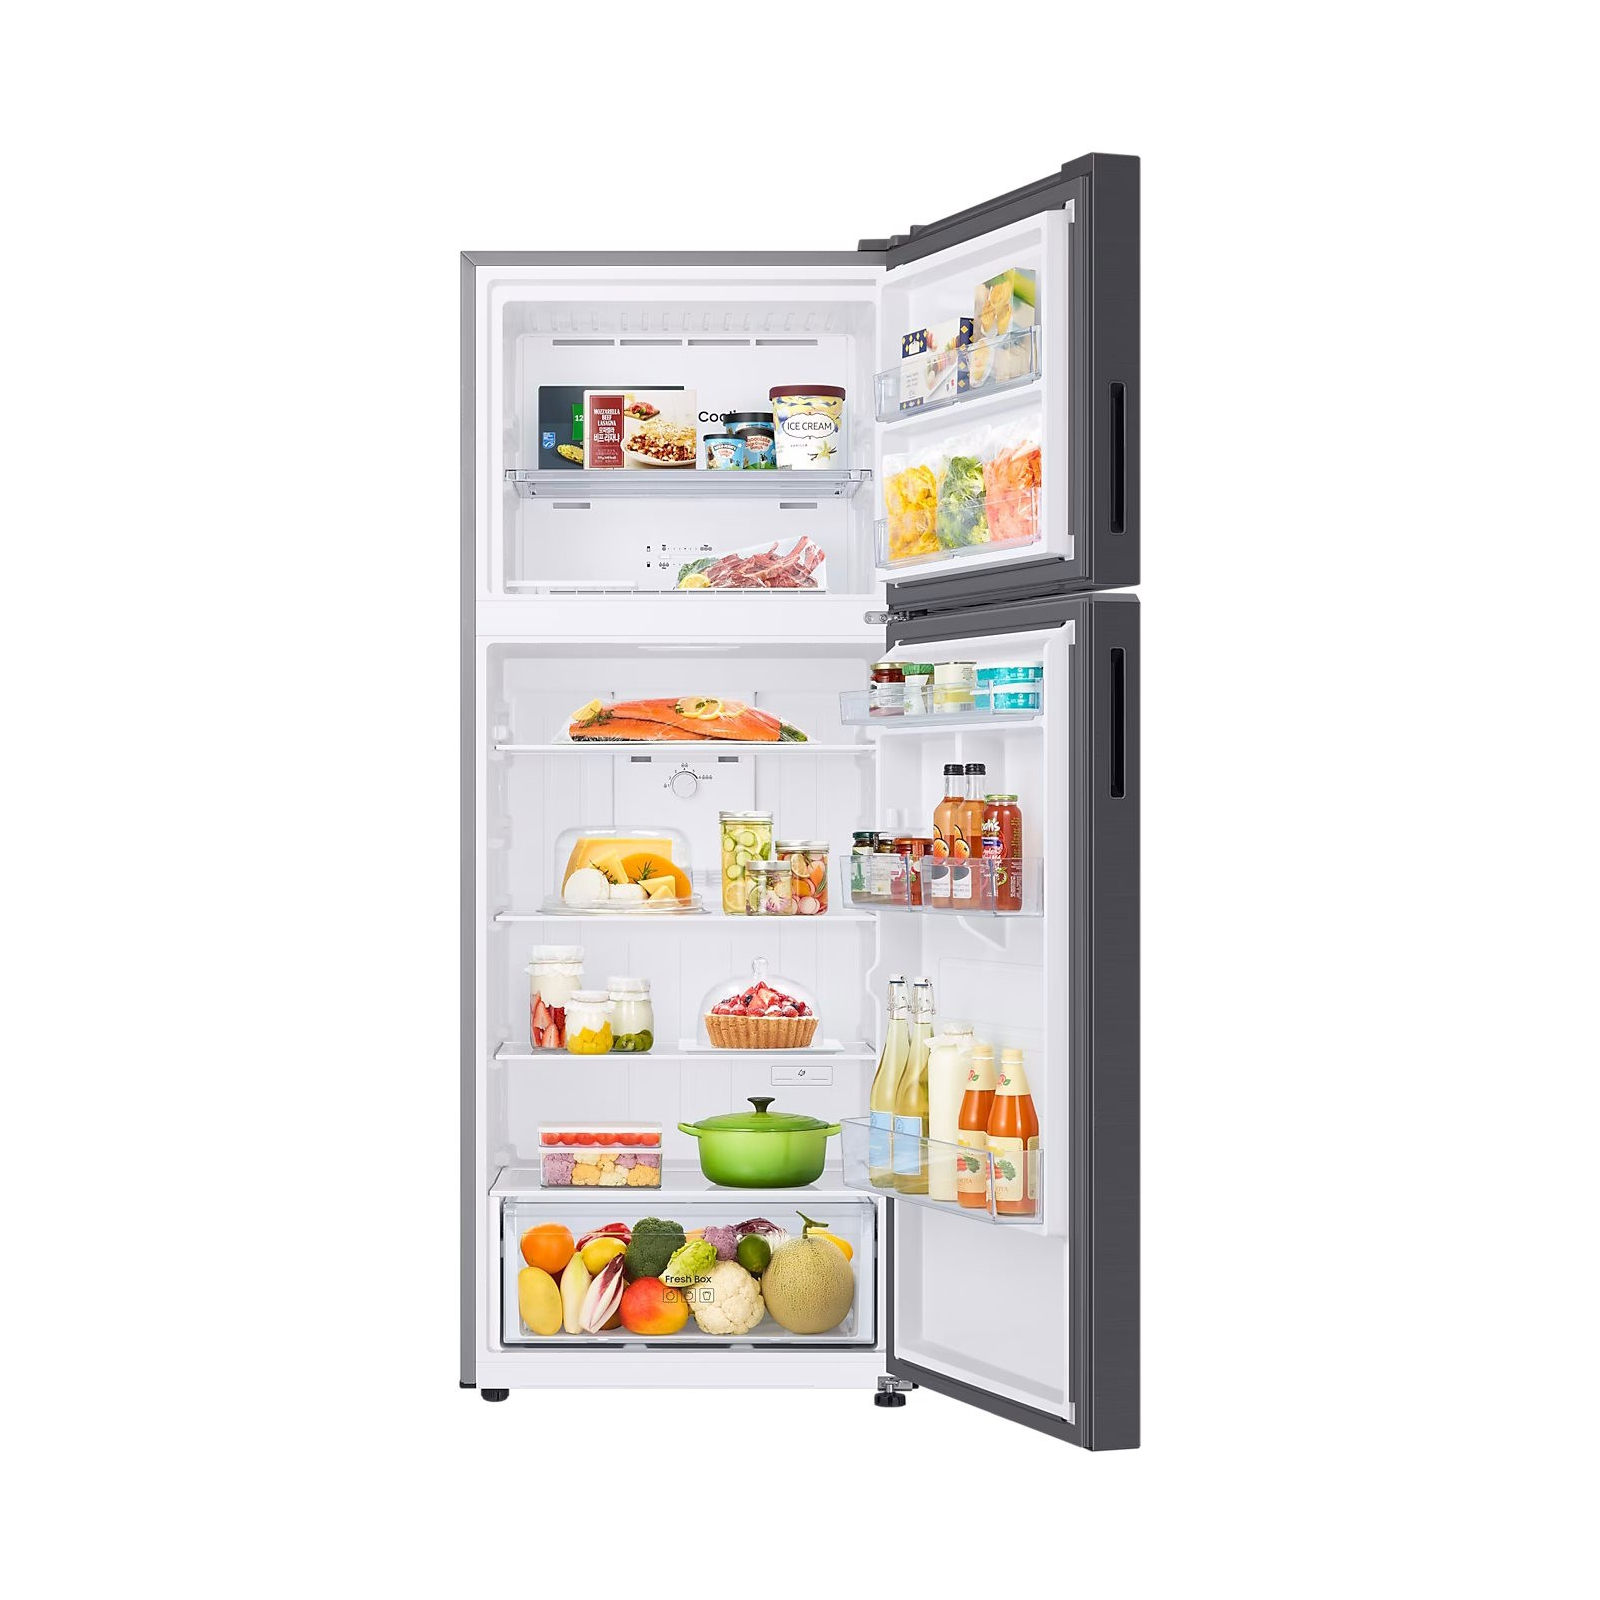 Холодильник Samsung RT42CG6000B1UA изображение 6